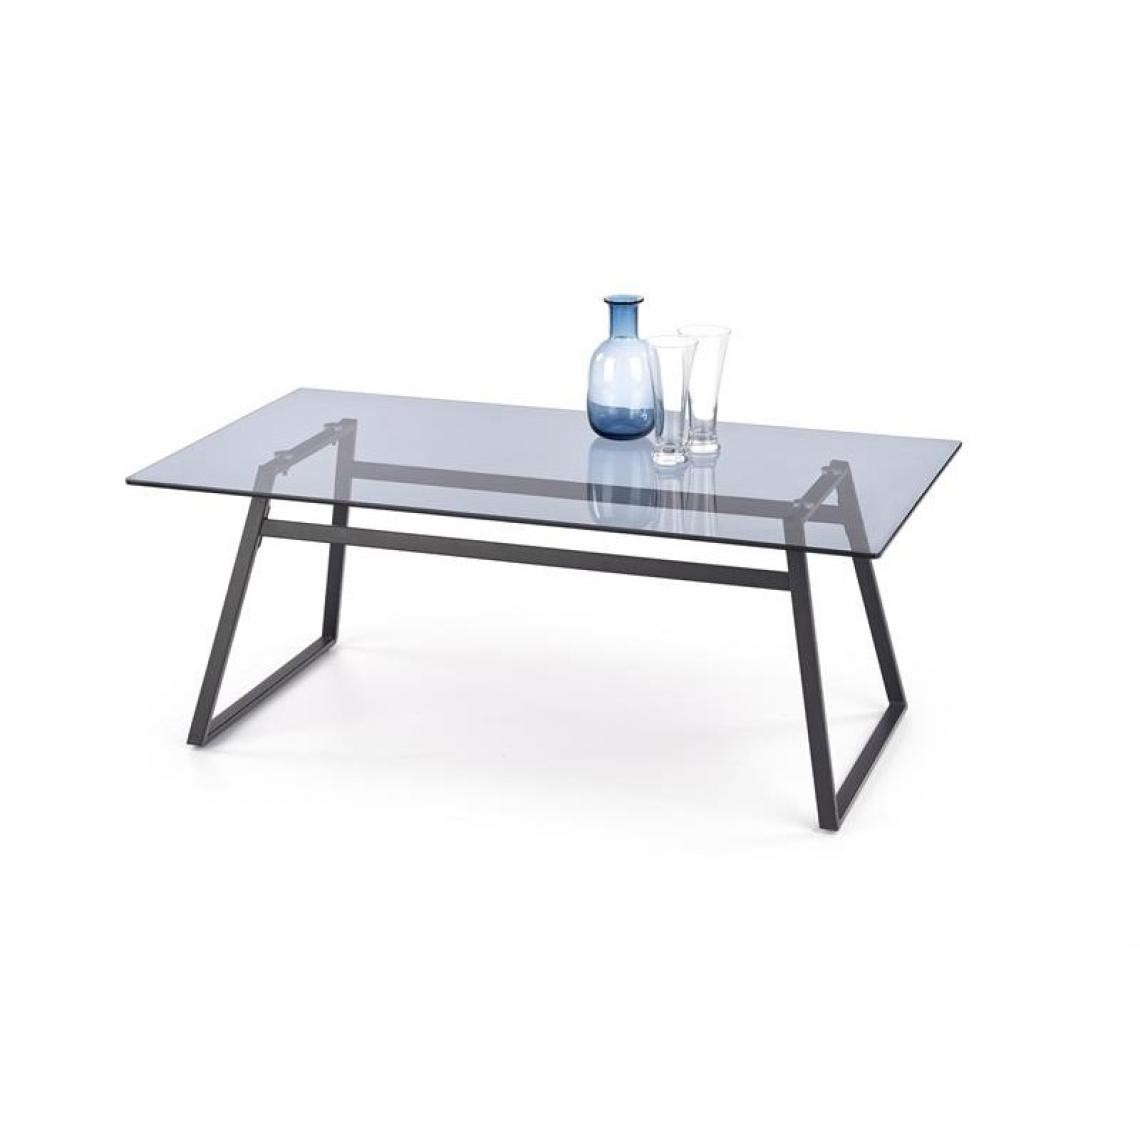 Carellia - Table basse moderne en verre 110 cm x 60 cm x 43 cm - Fumé/Noir - Tables basses